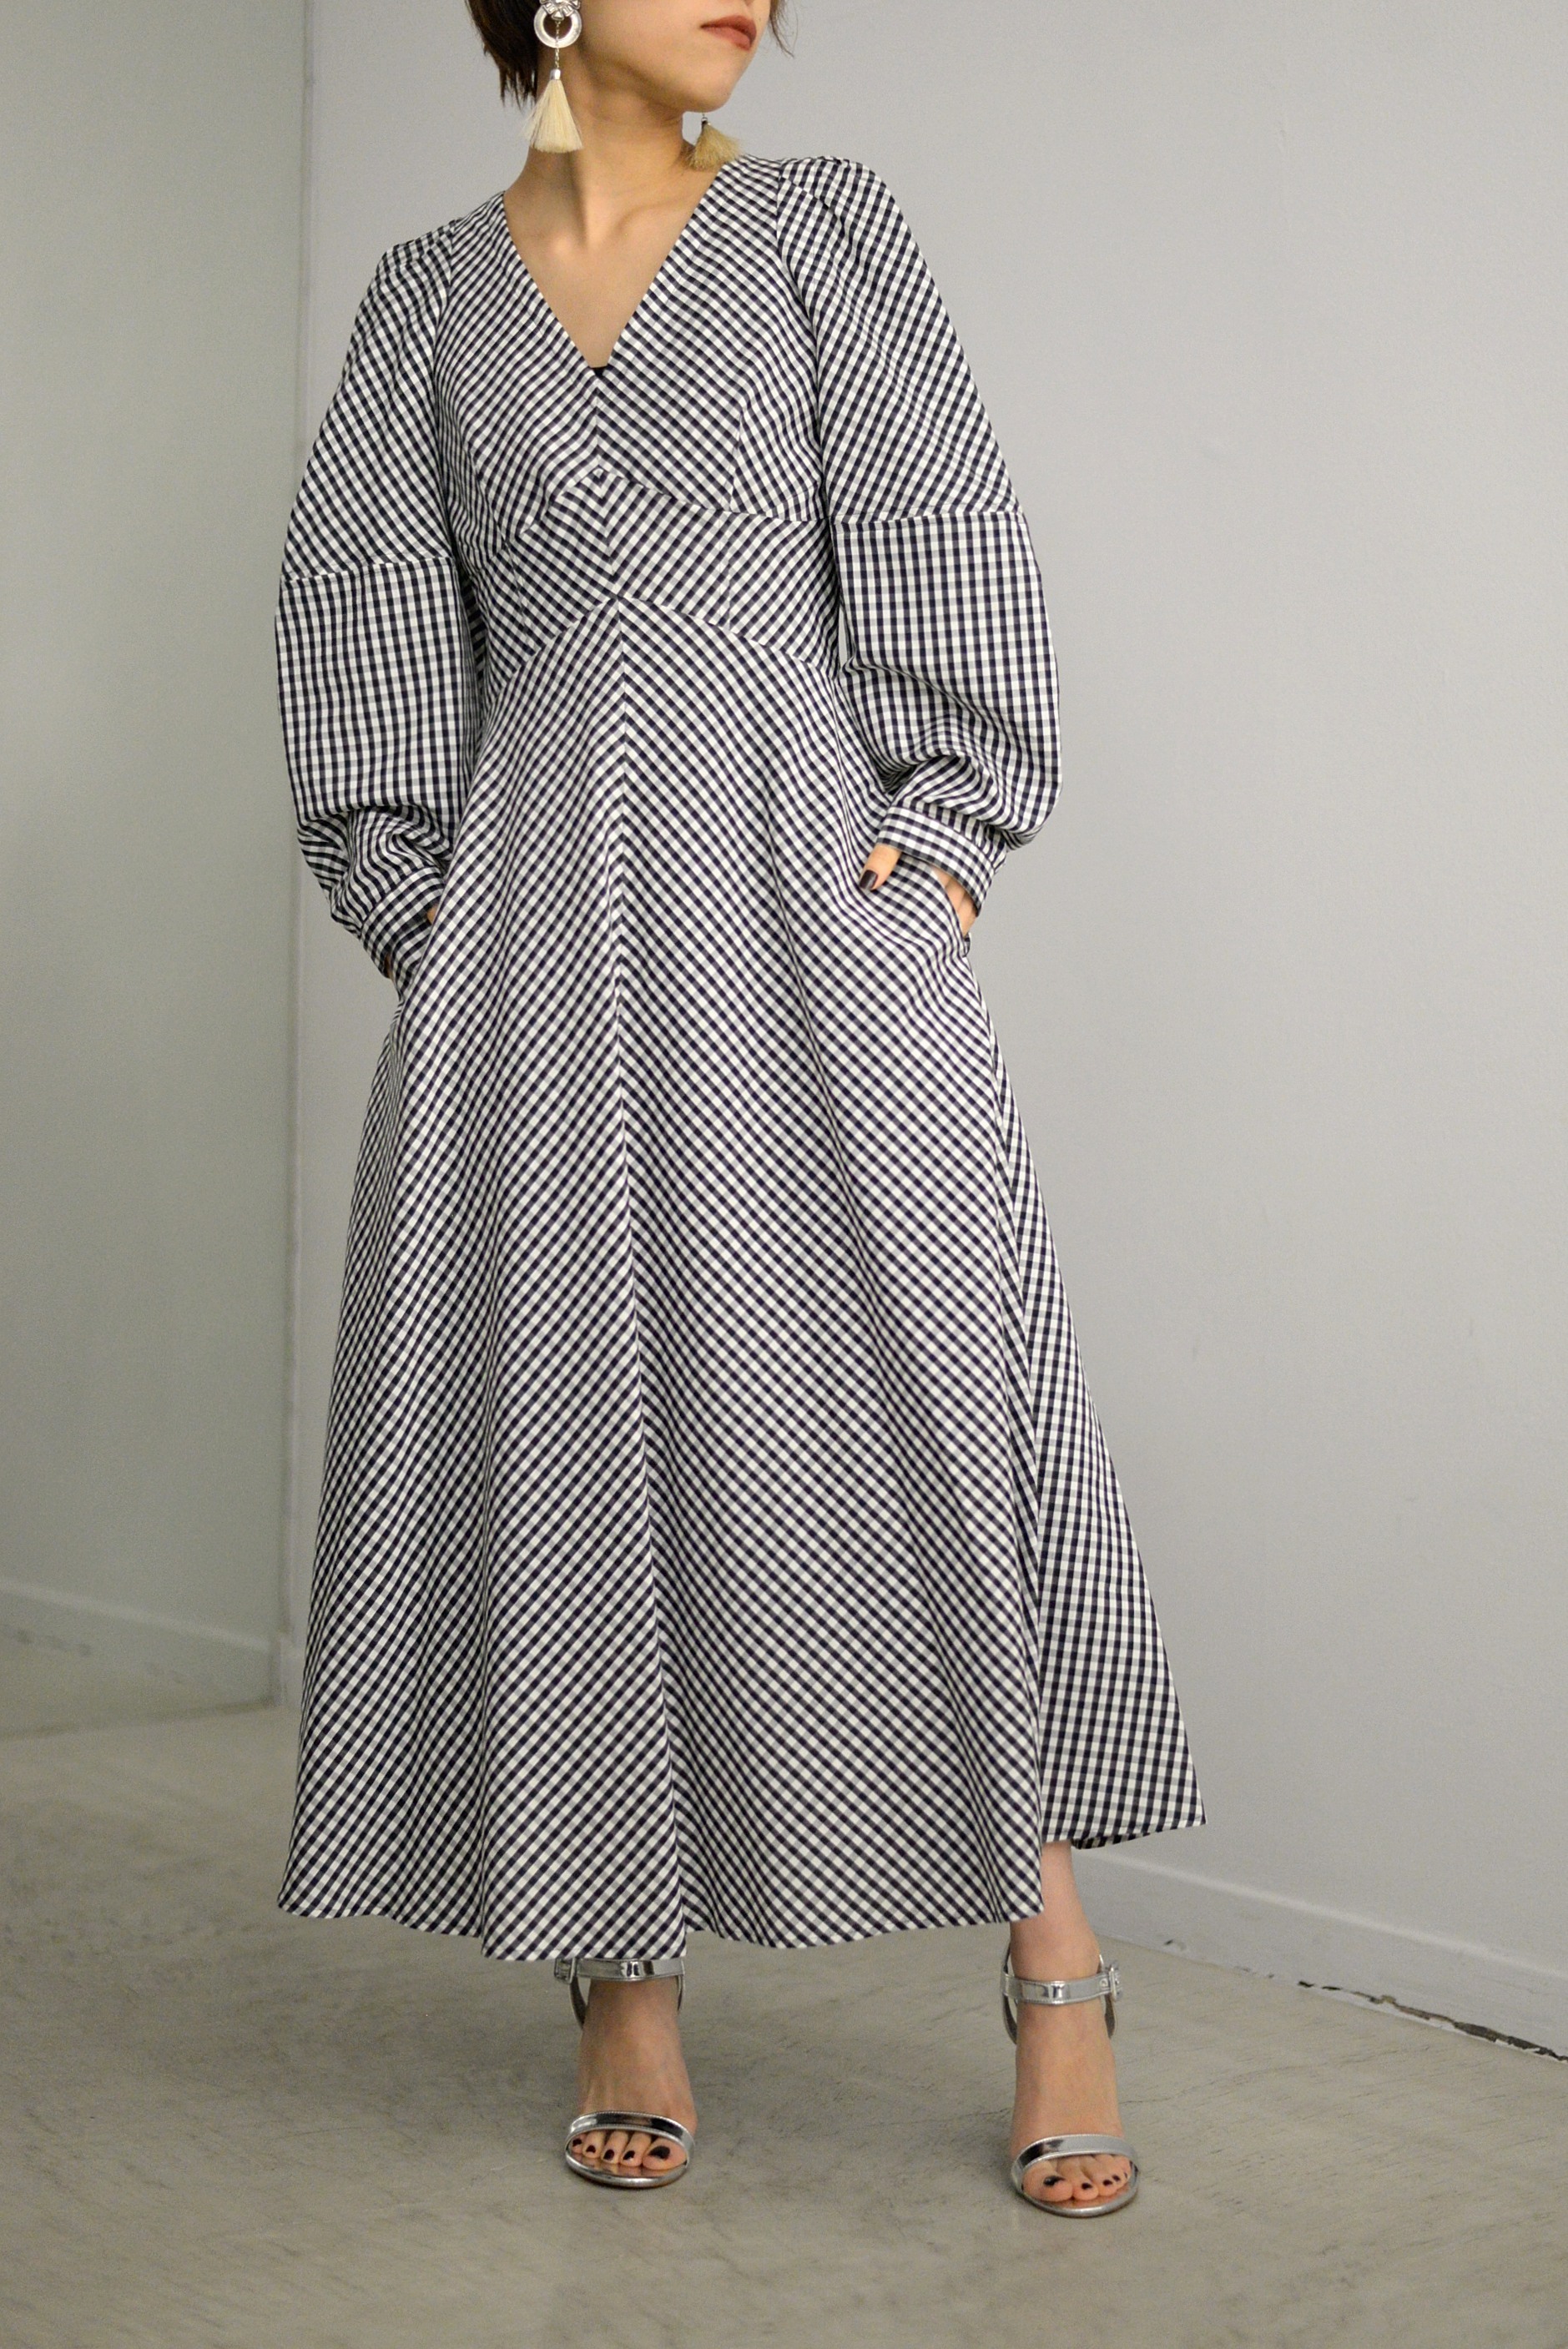 女性の曲線美を綺麗に表現したドレス 【YOHEIOHNO】 | ROOM211 online shop